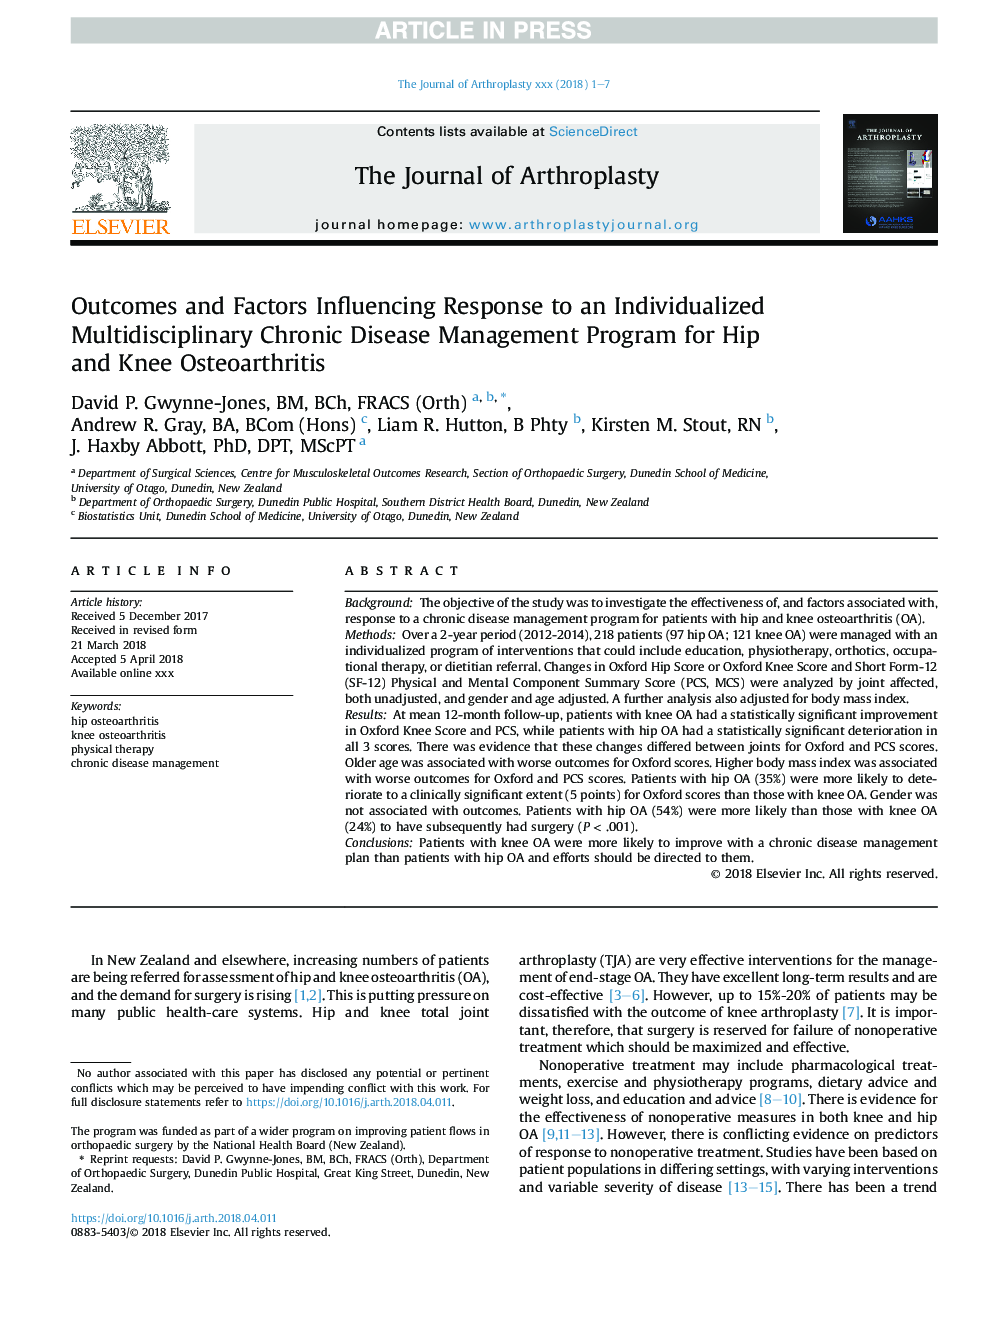 نتایج و عوامل موثر بر پاسخ به یک برنامه مداخله متخصصی در زمینه های مختلف بیماری مزمن برای استئوآرتریت هیپ و زانو